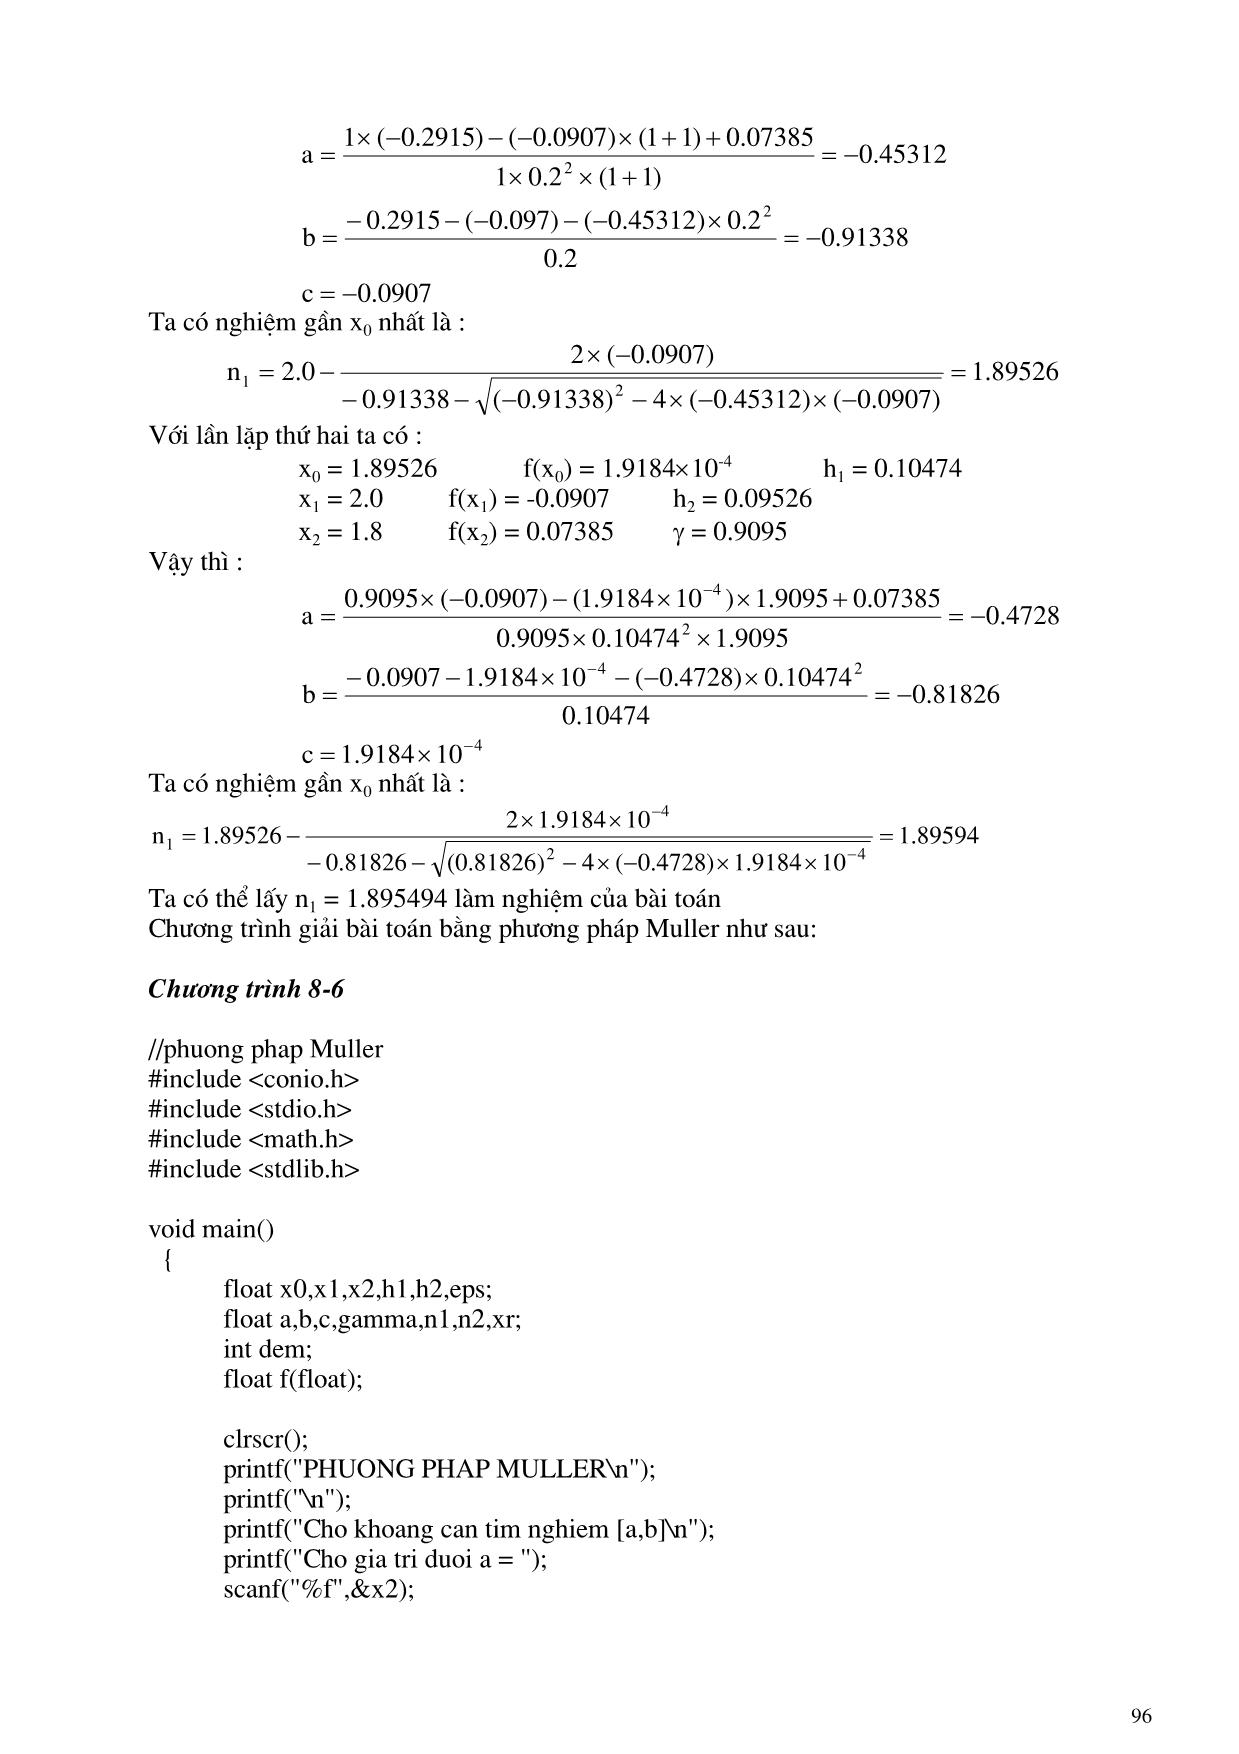 Giáo trình Turbo C nâng cao và C++ (Phần 2) trang 10